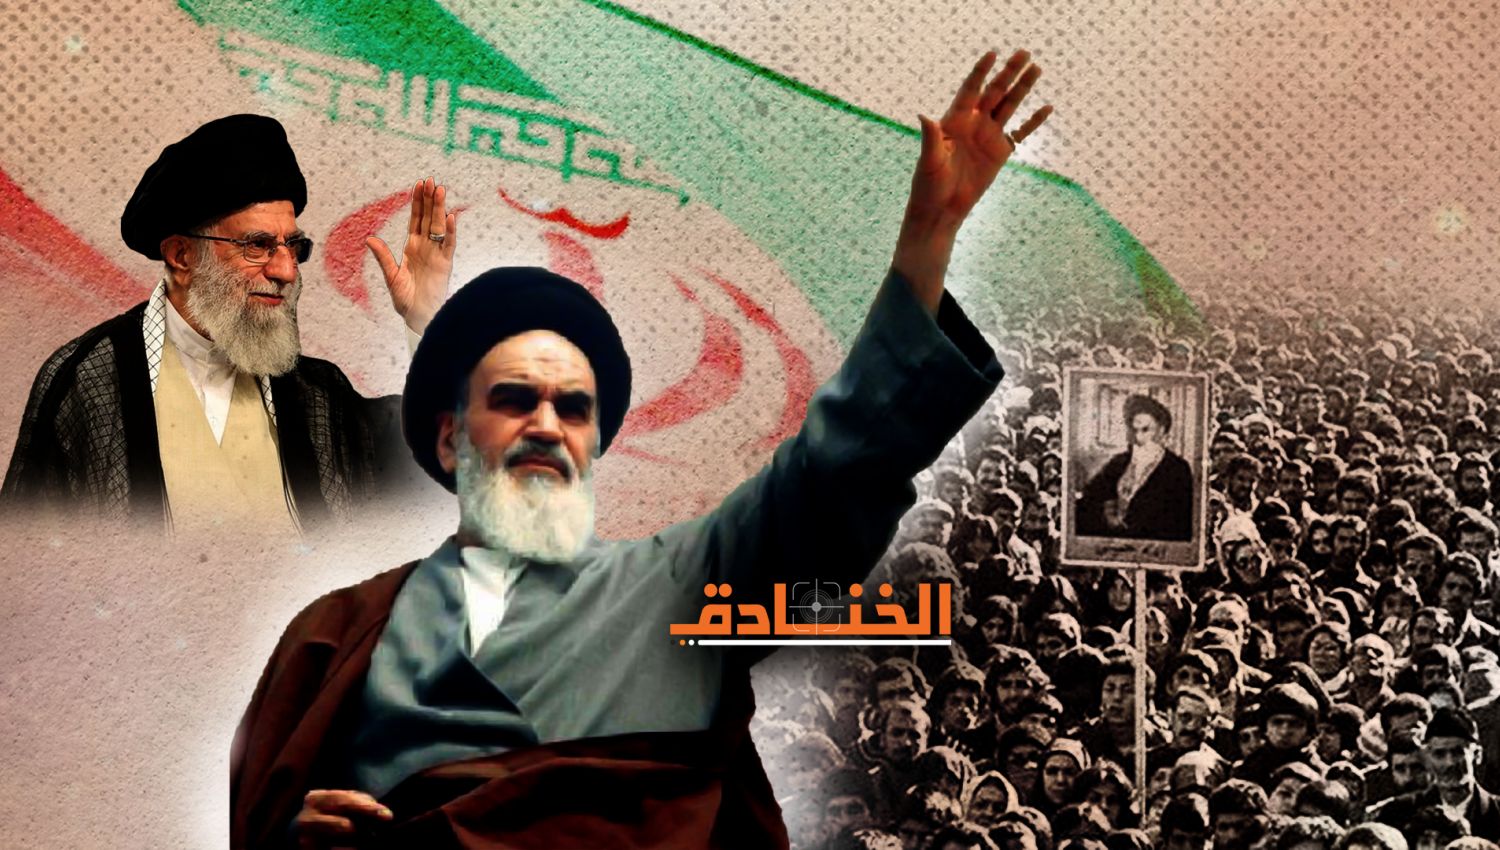 43 عاماً: قوّة الجمهورية الإسلامية تتعاظم!